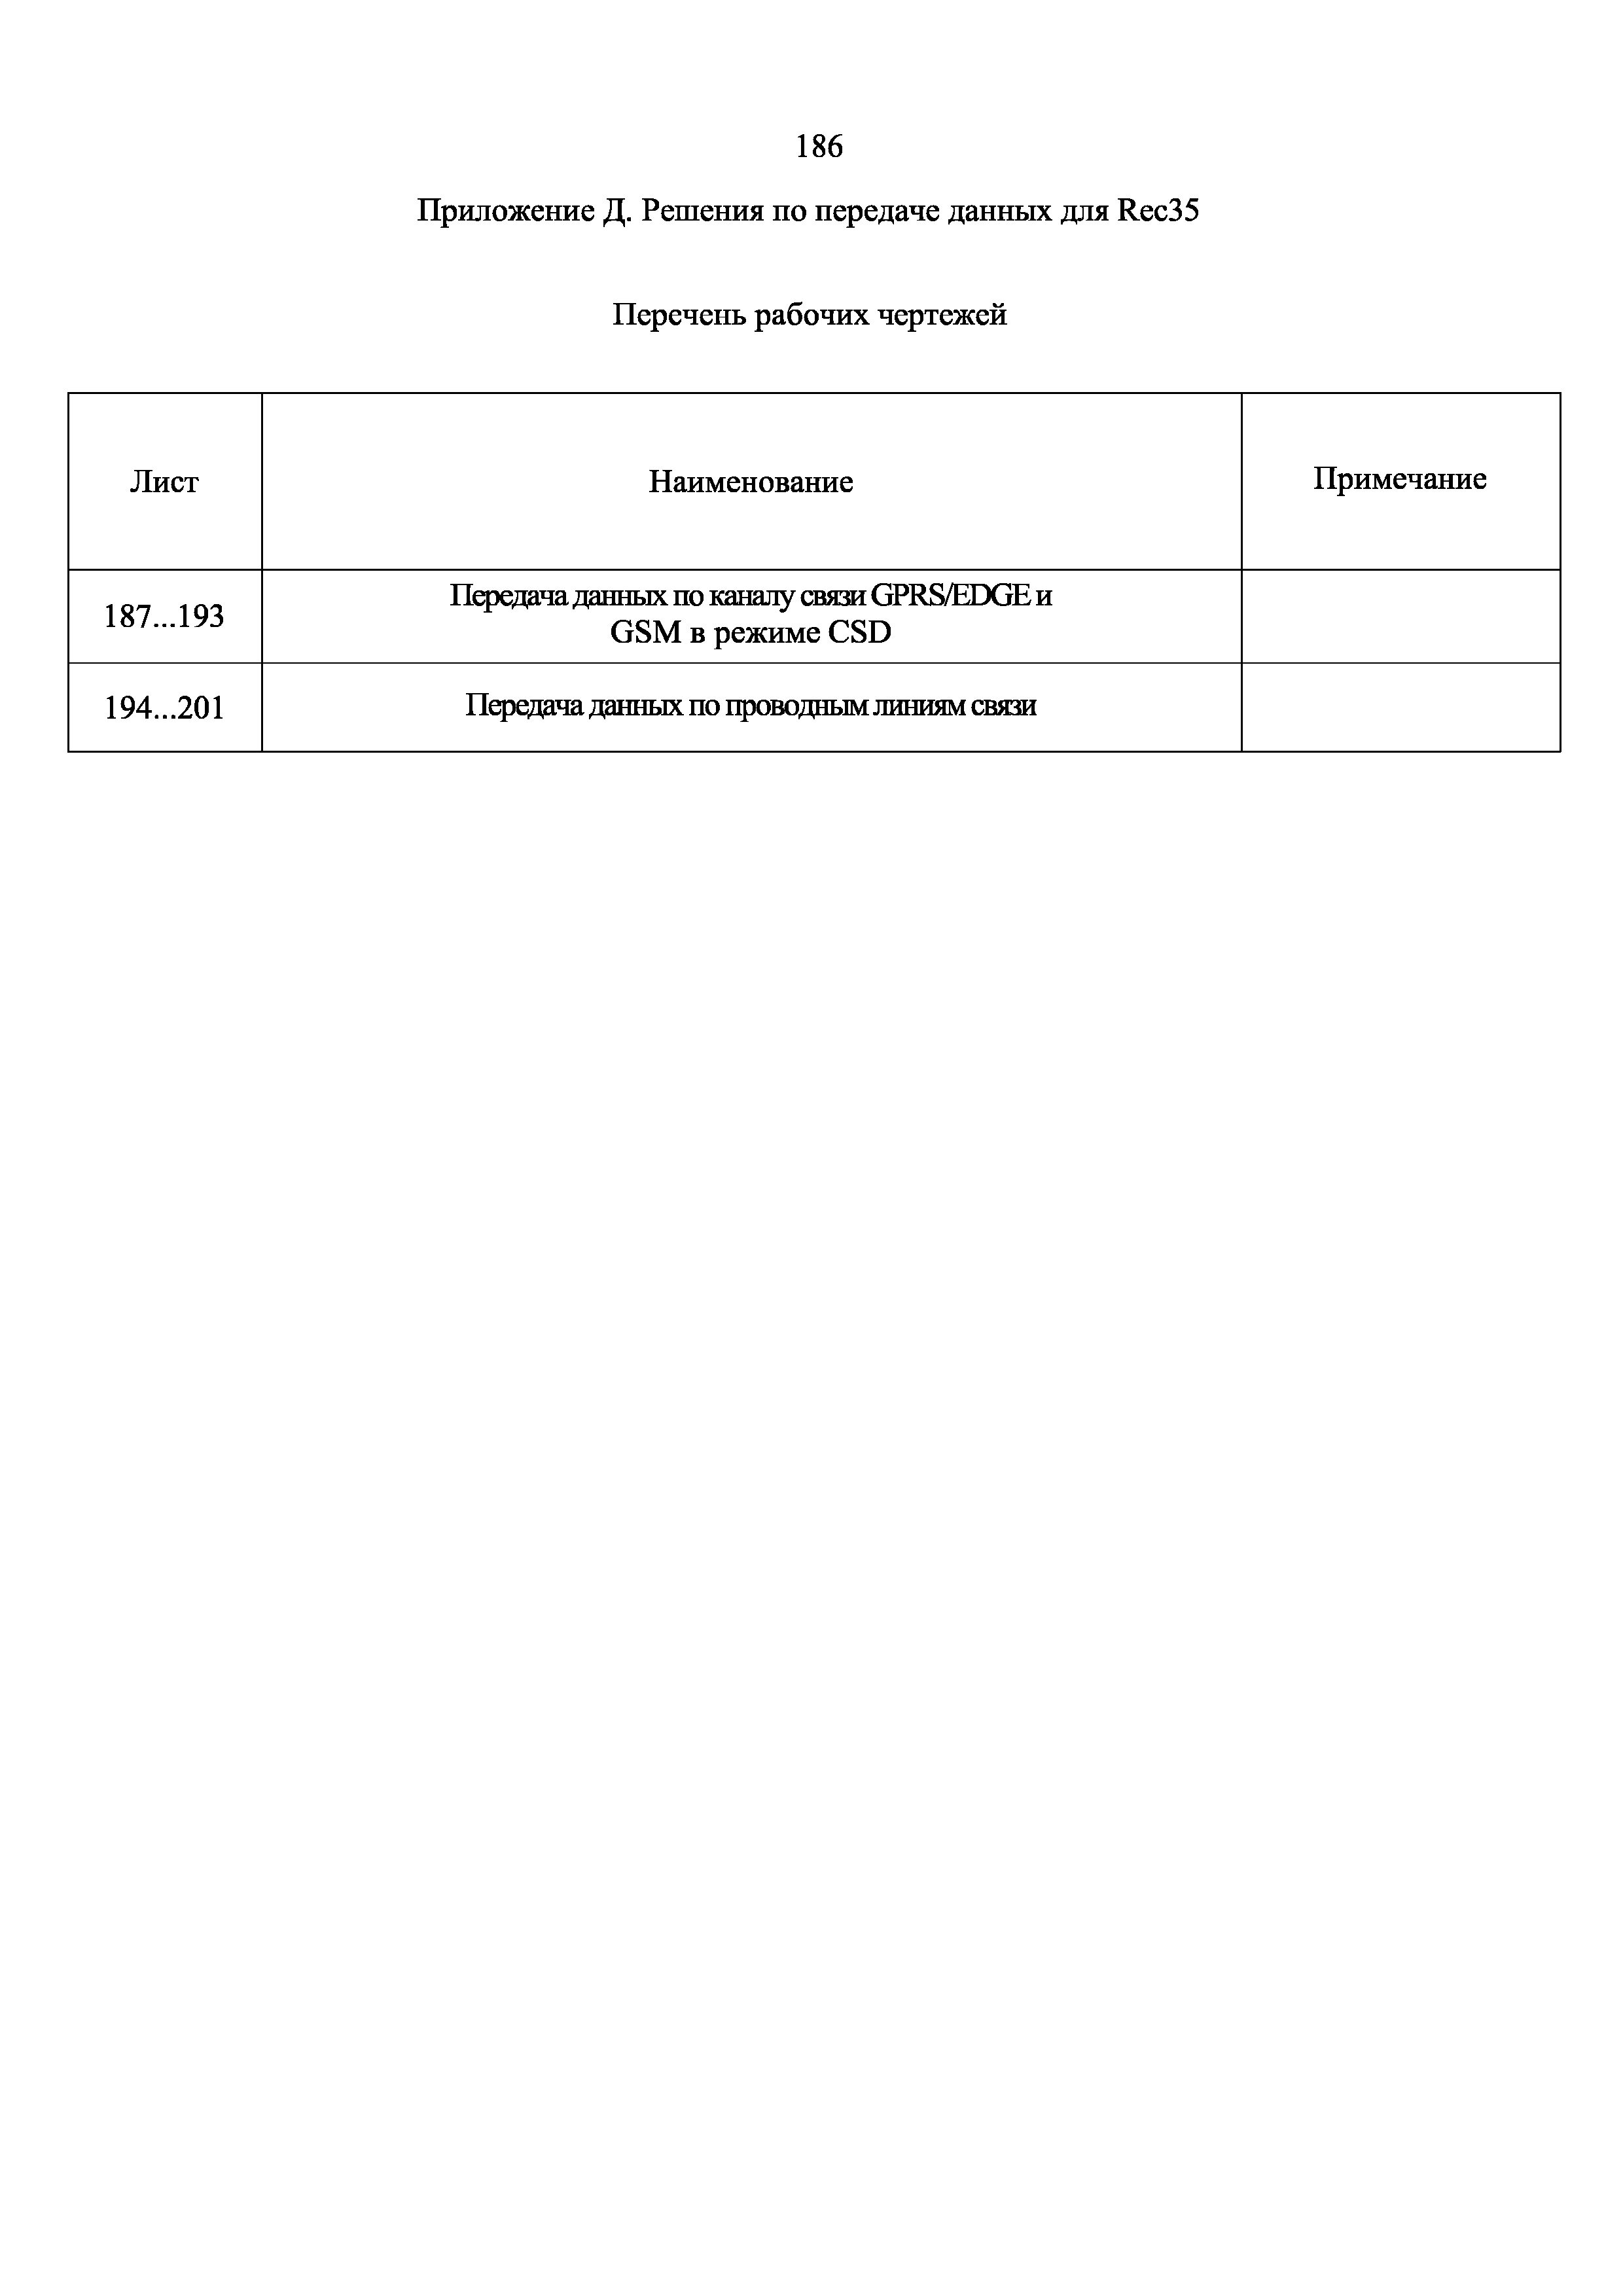 СТО 34.01-2.2-033.1-2017